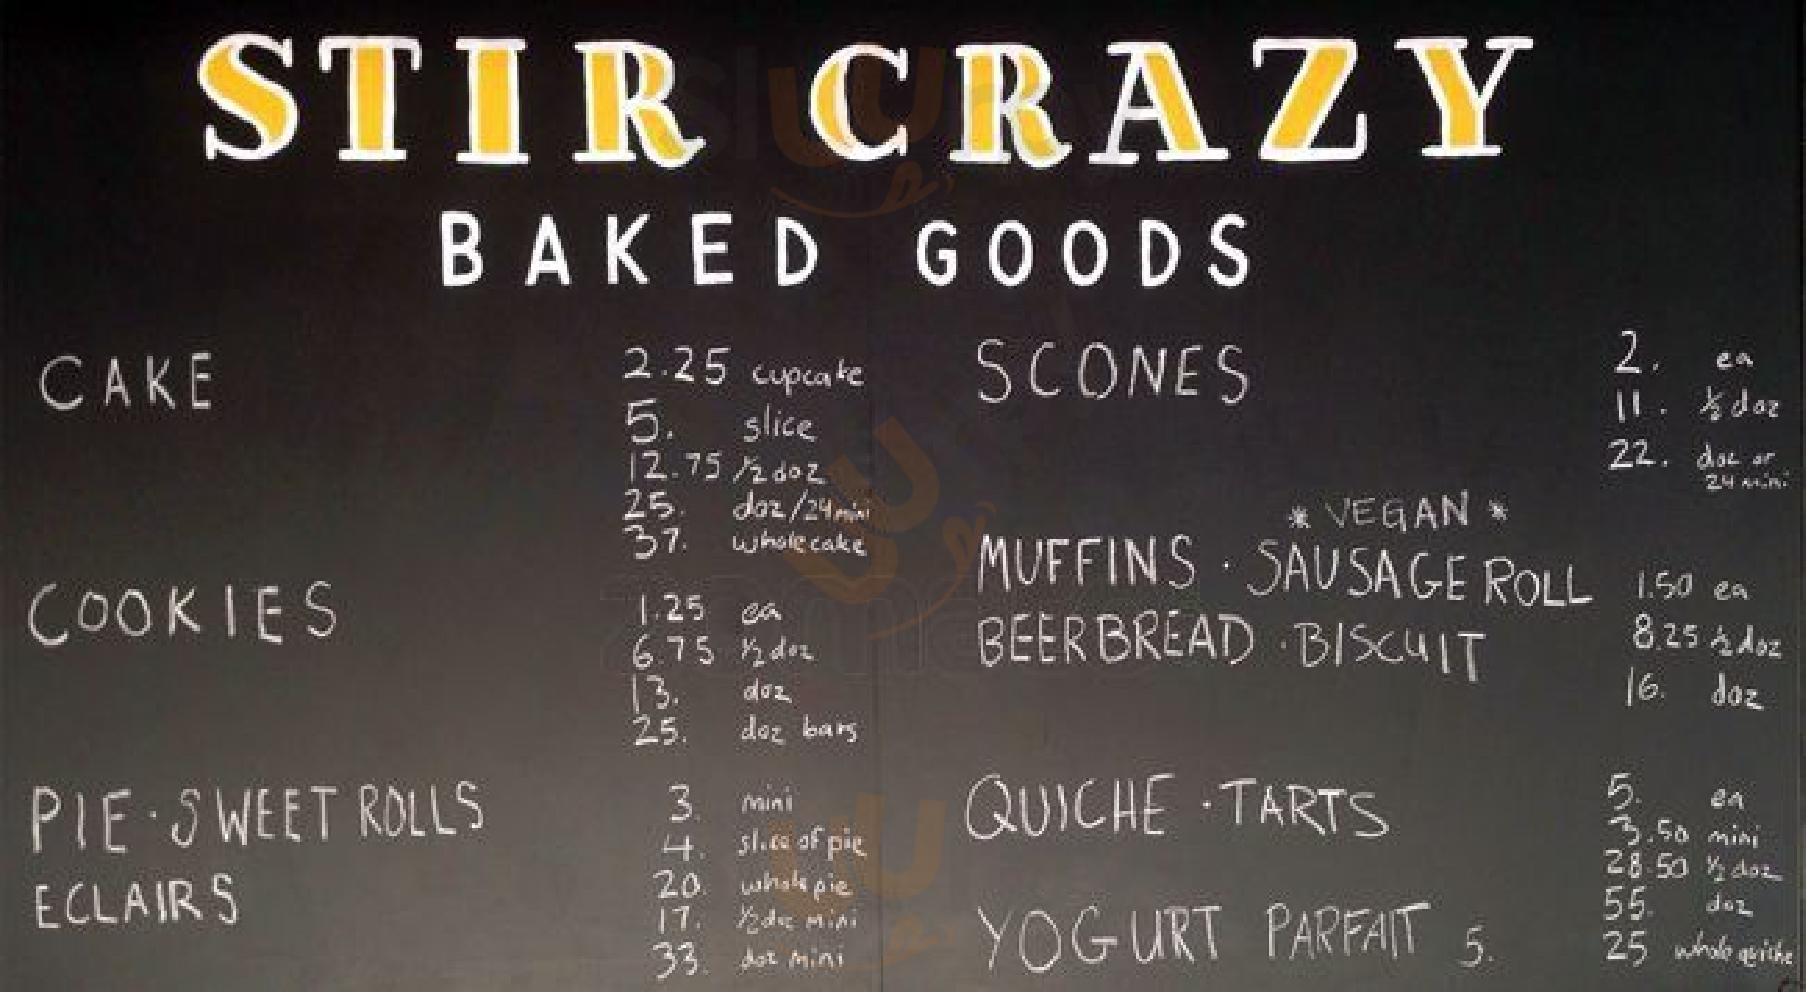 Stir Crazy Baked Goods Fort Worth Menu - 1